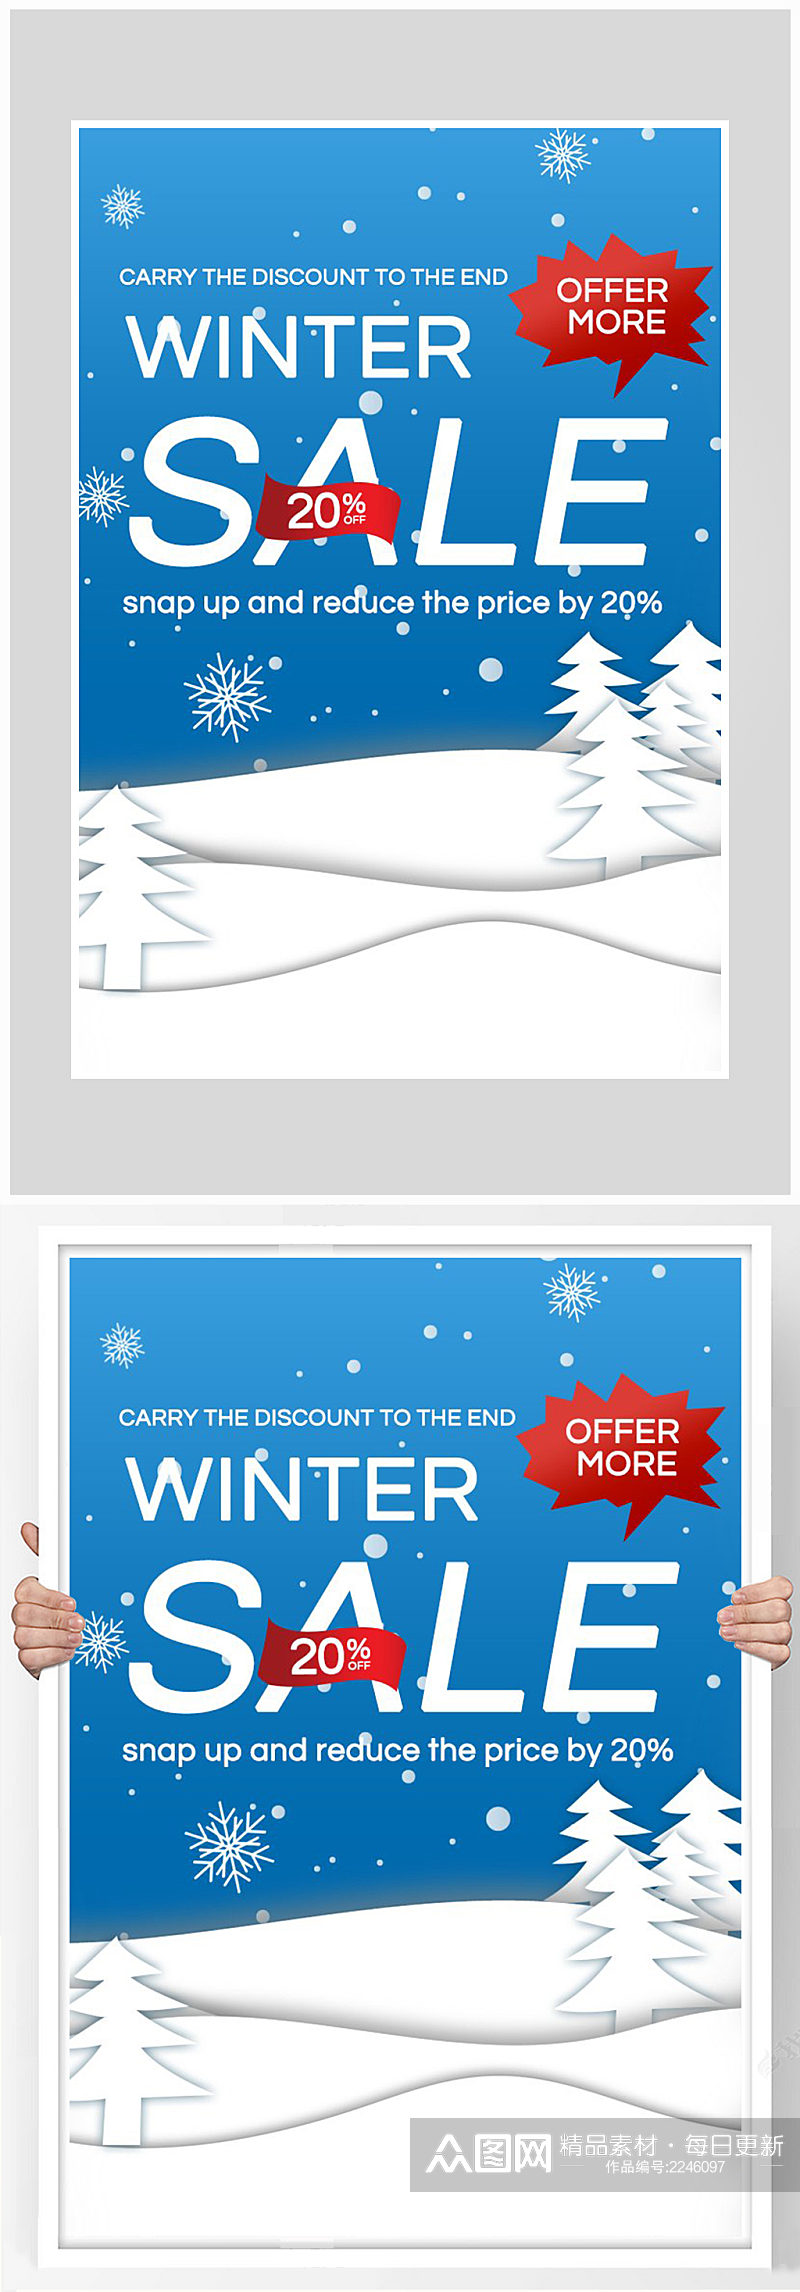 创意质感冬季打折促销海报设计素材